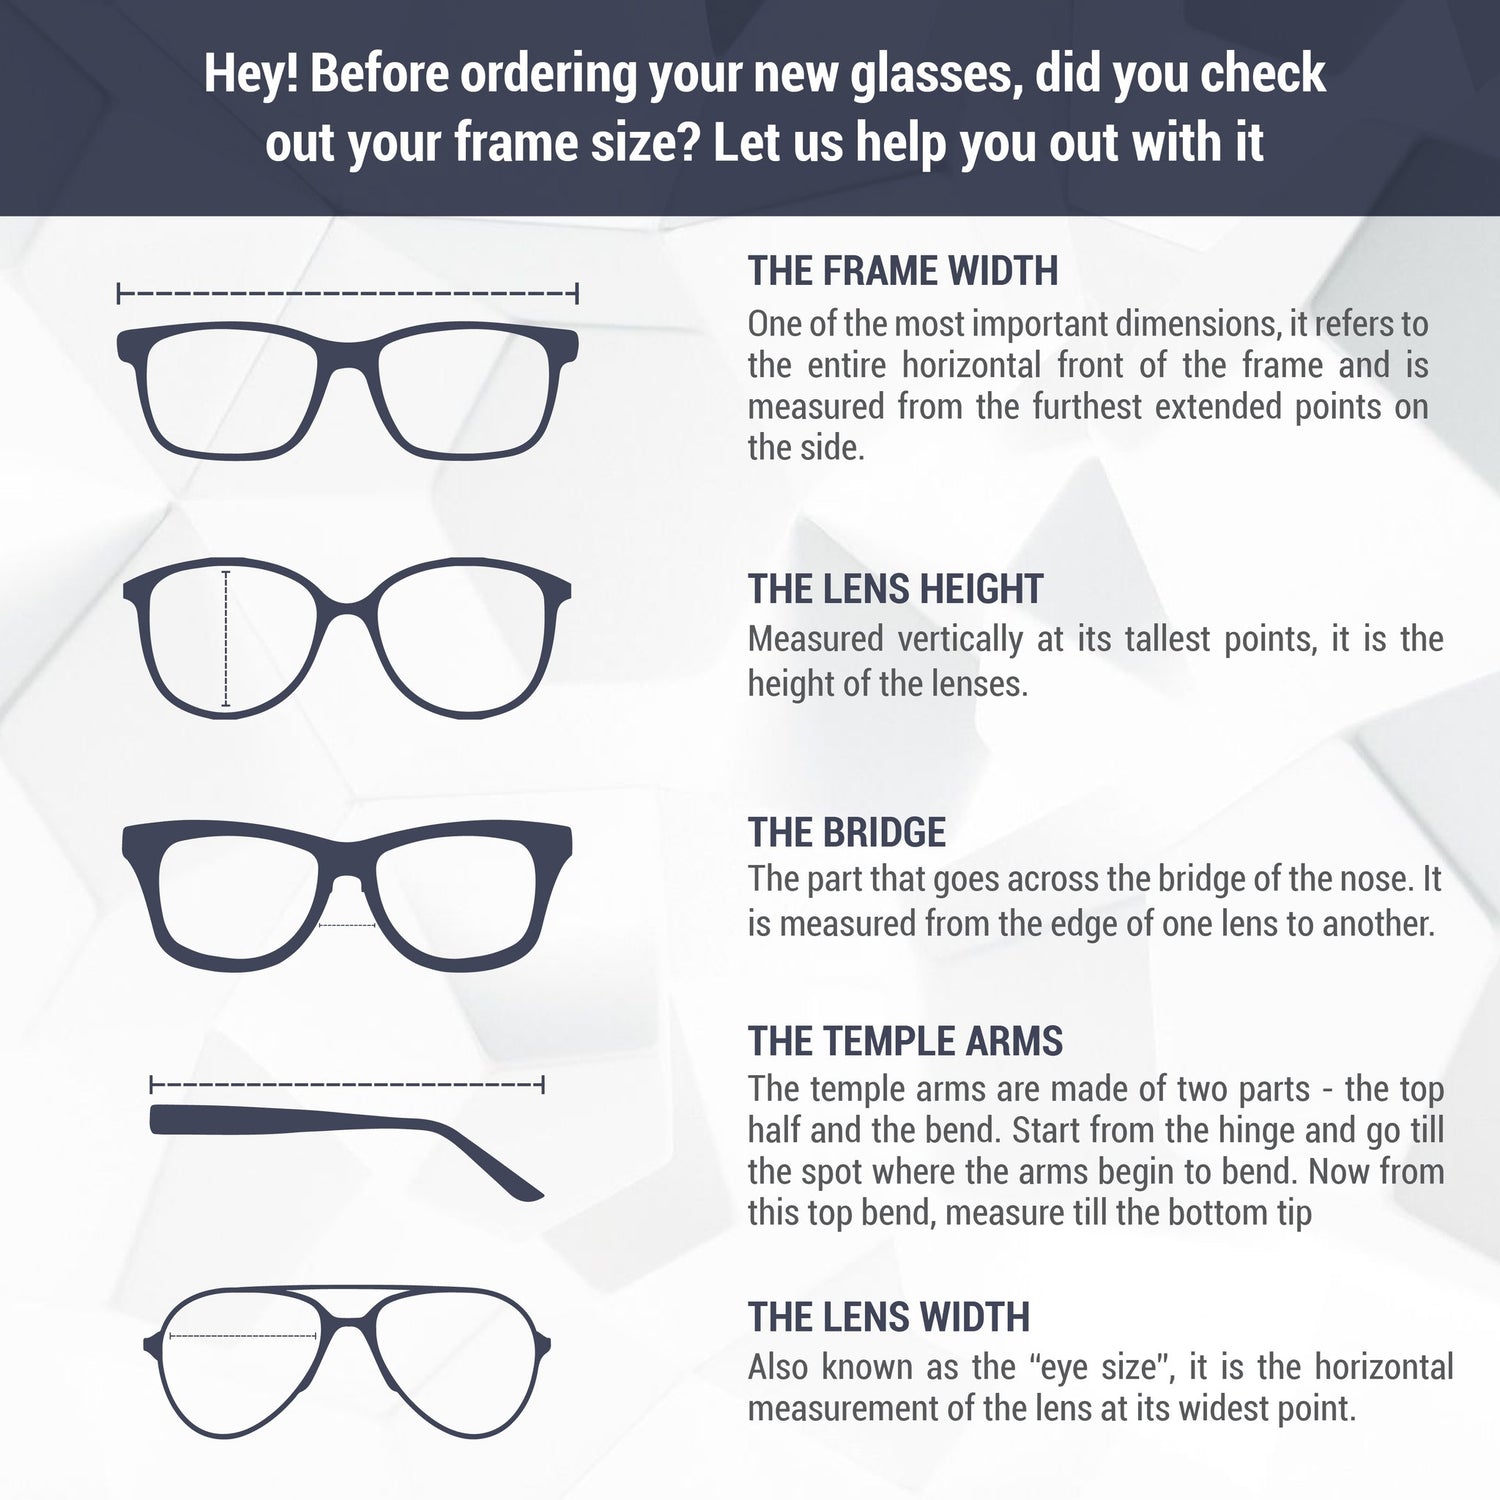 Monture de lunettes Tommy Hilfiger | Modèle TH1478